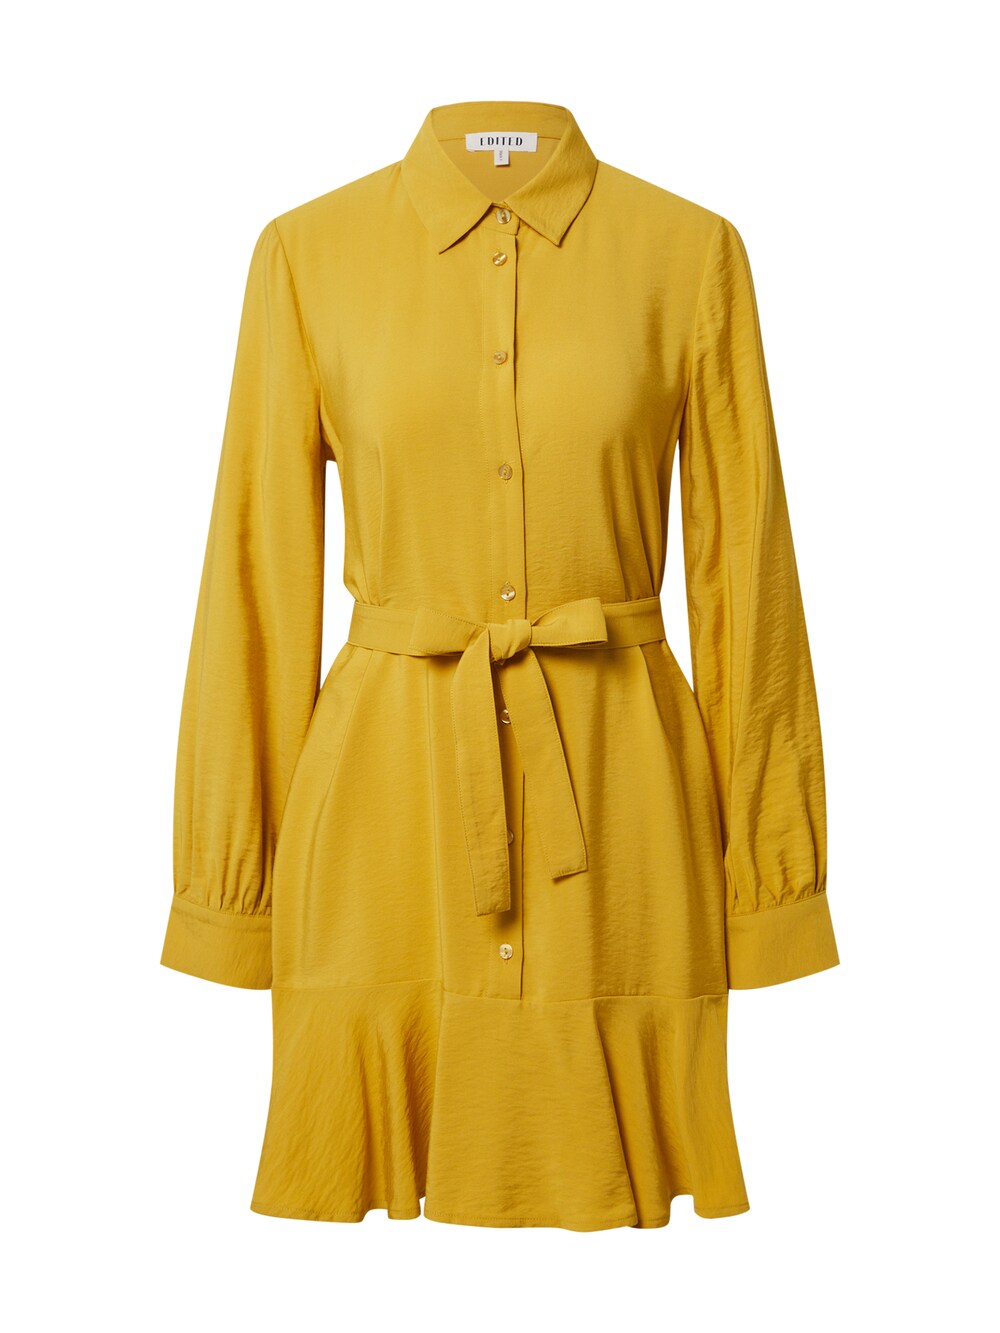 Рубашка-платье Edited Hanka, желтый рубашка платье edited nathaly синий желтый